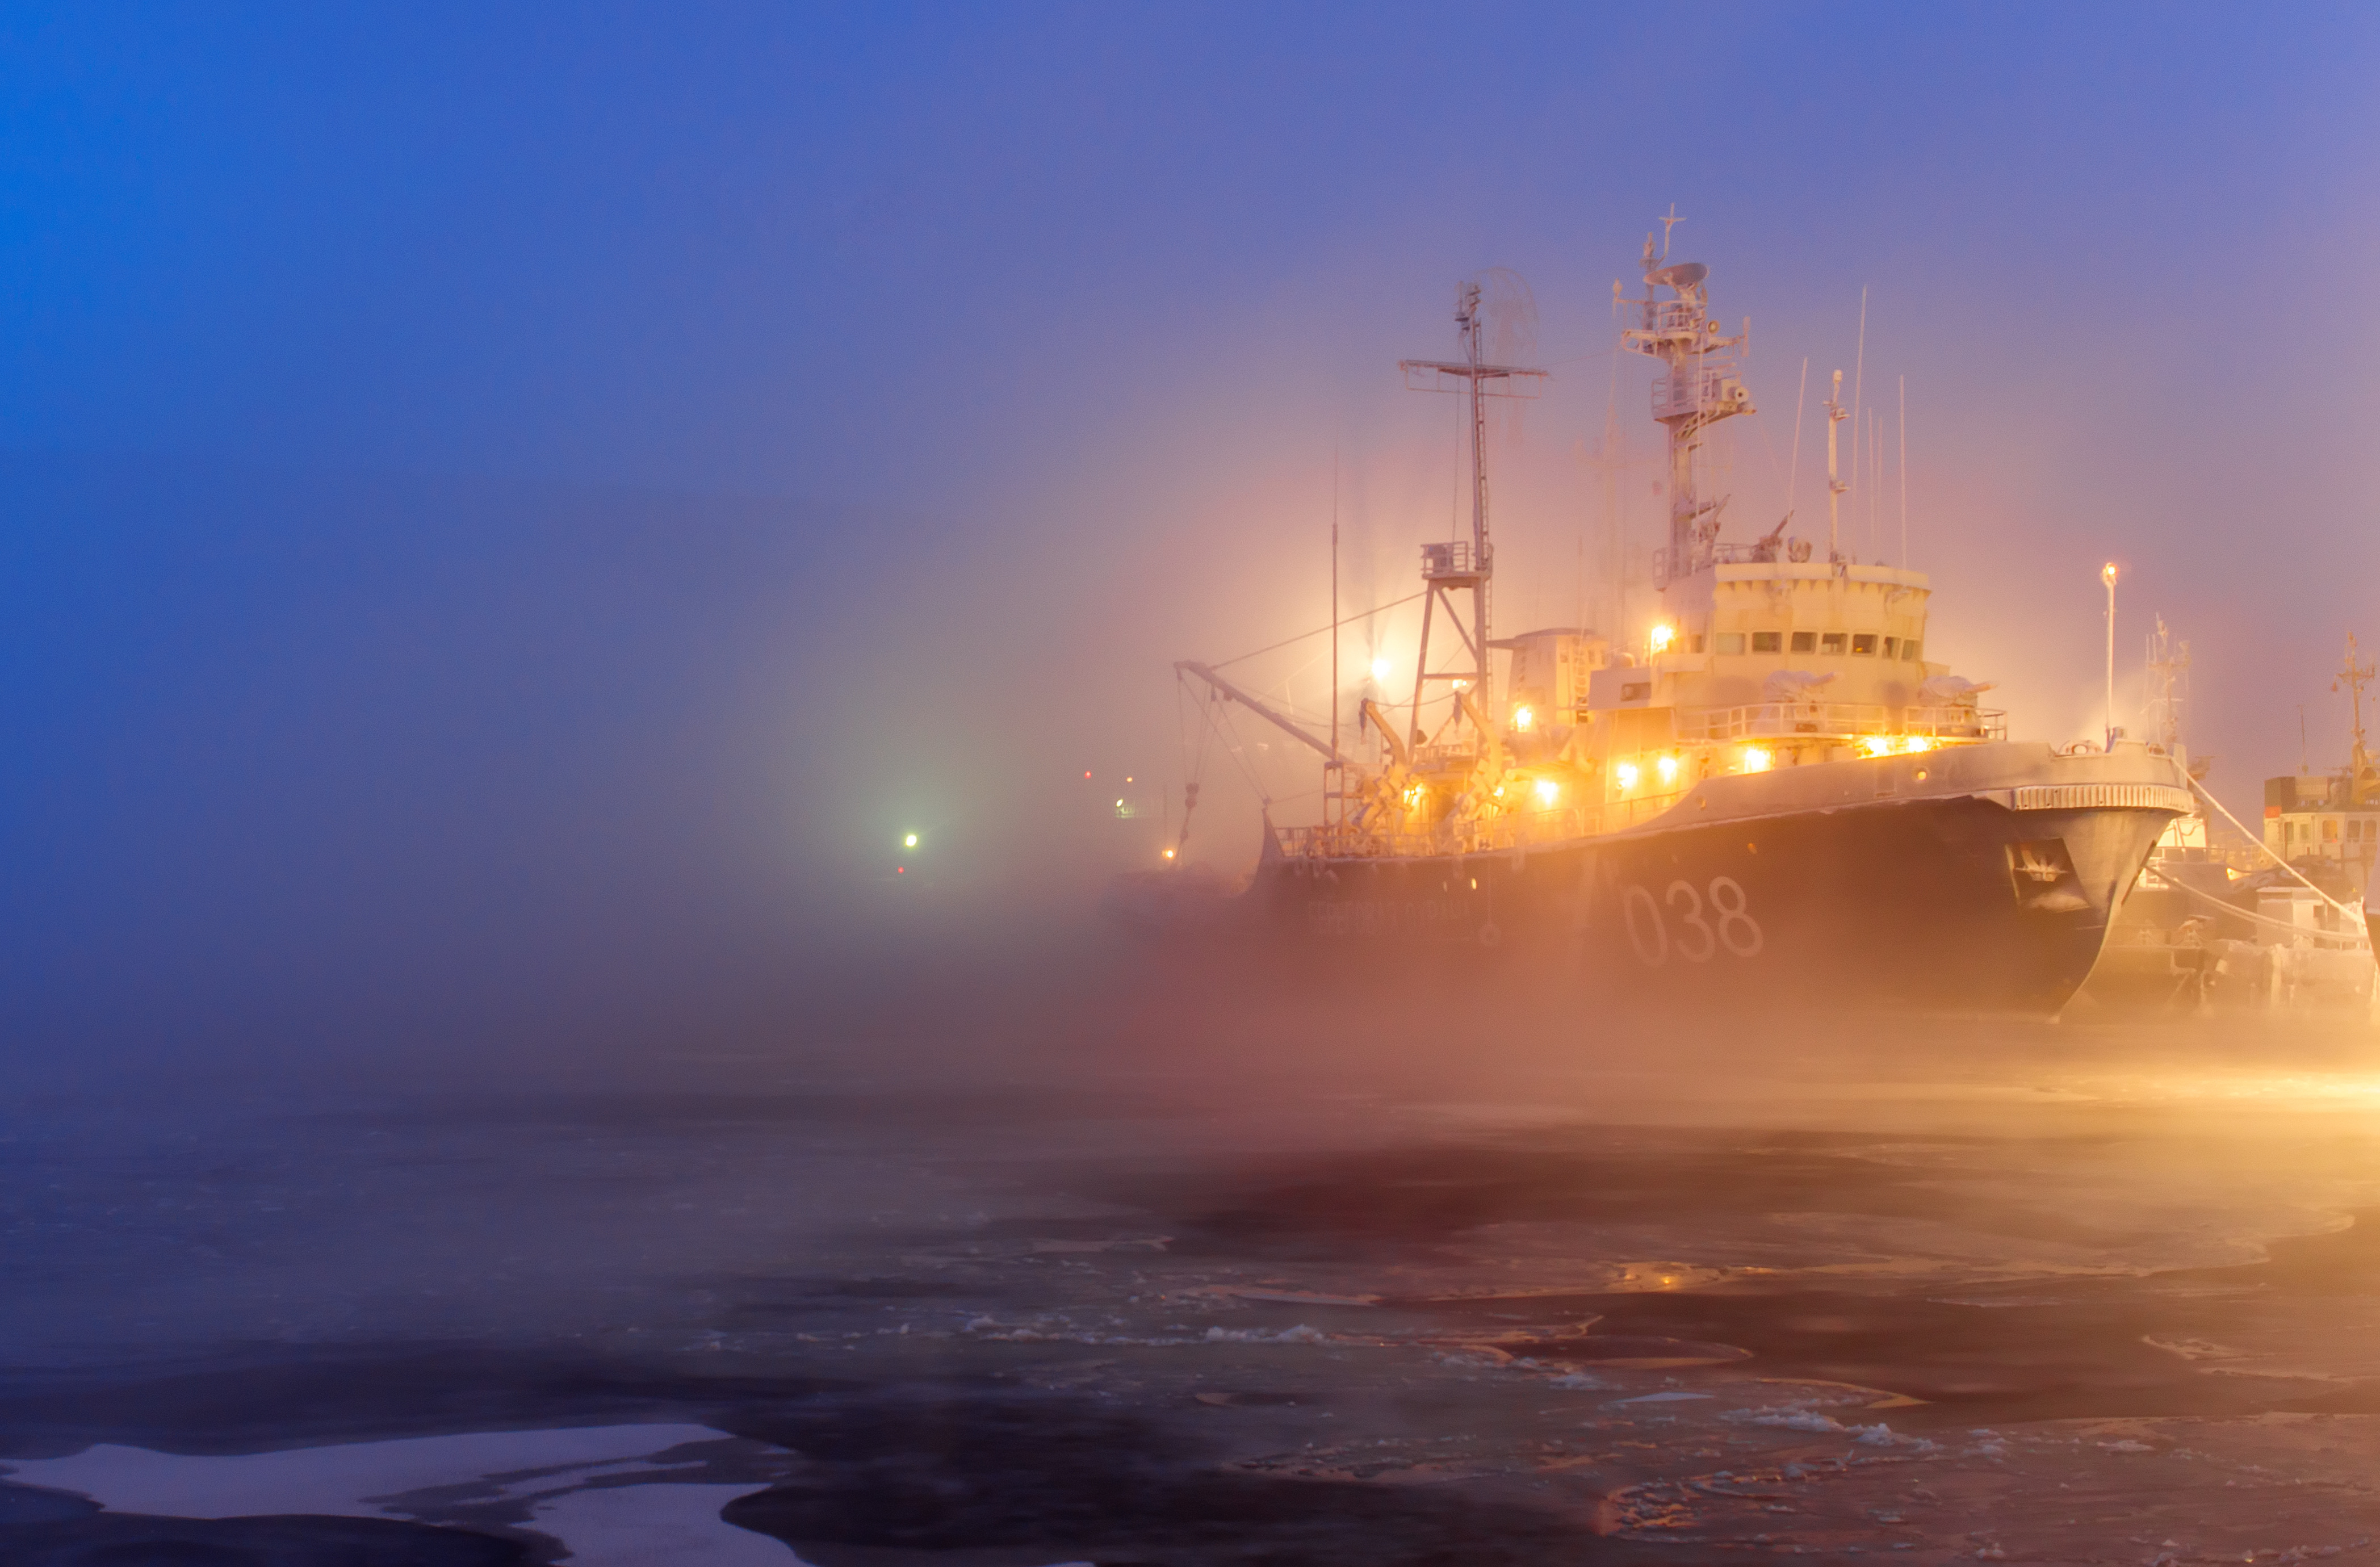 Небесный пароход. Корабль в море. Корабль в тумане. Судно в тумане. Порт и корабли.